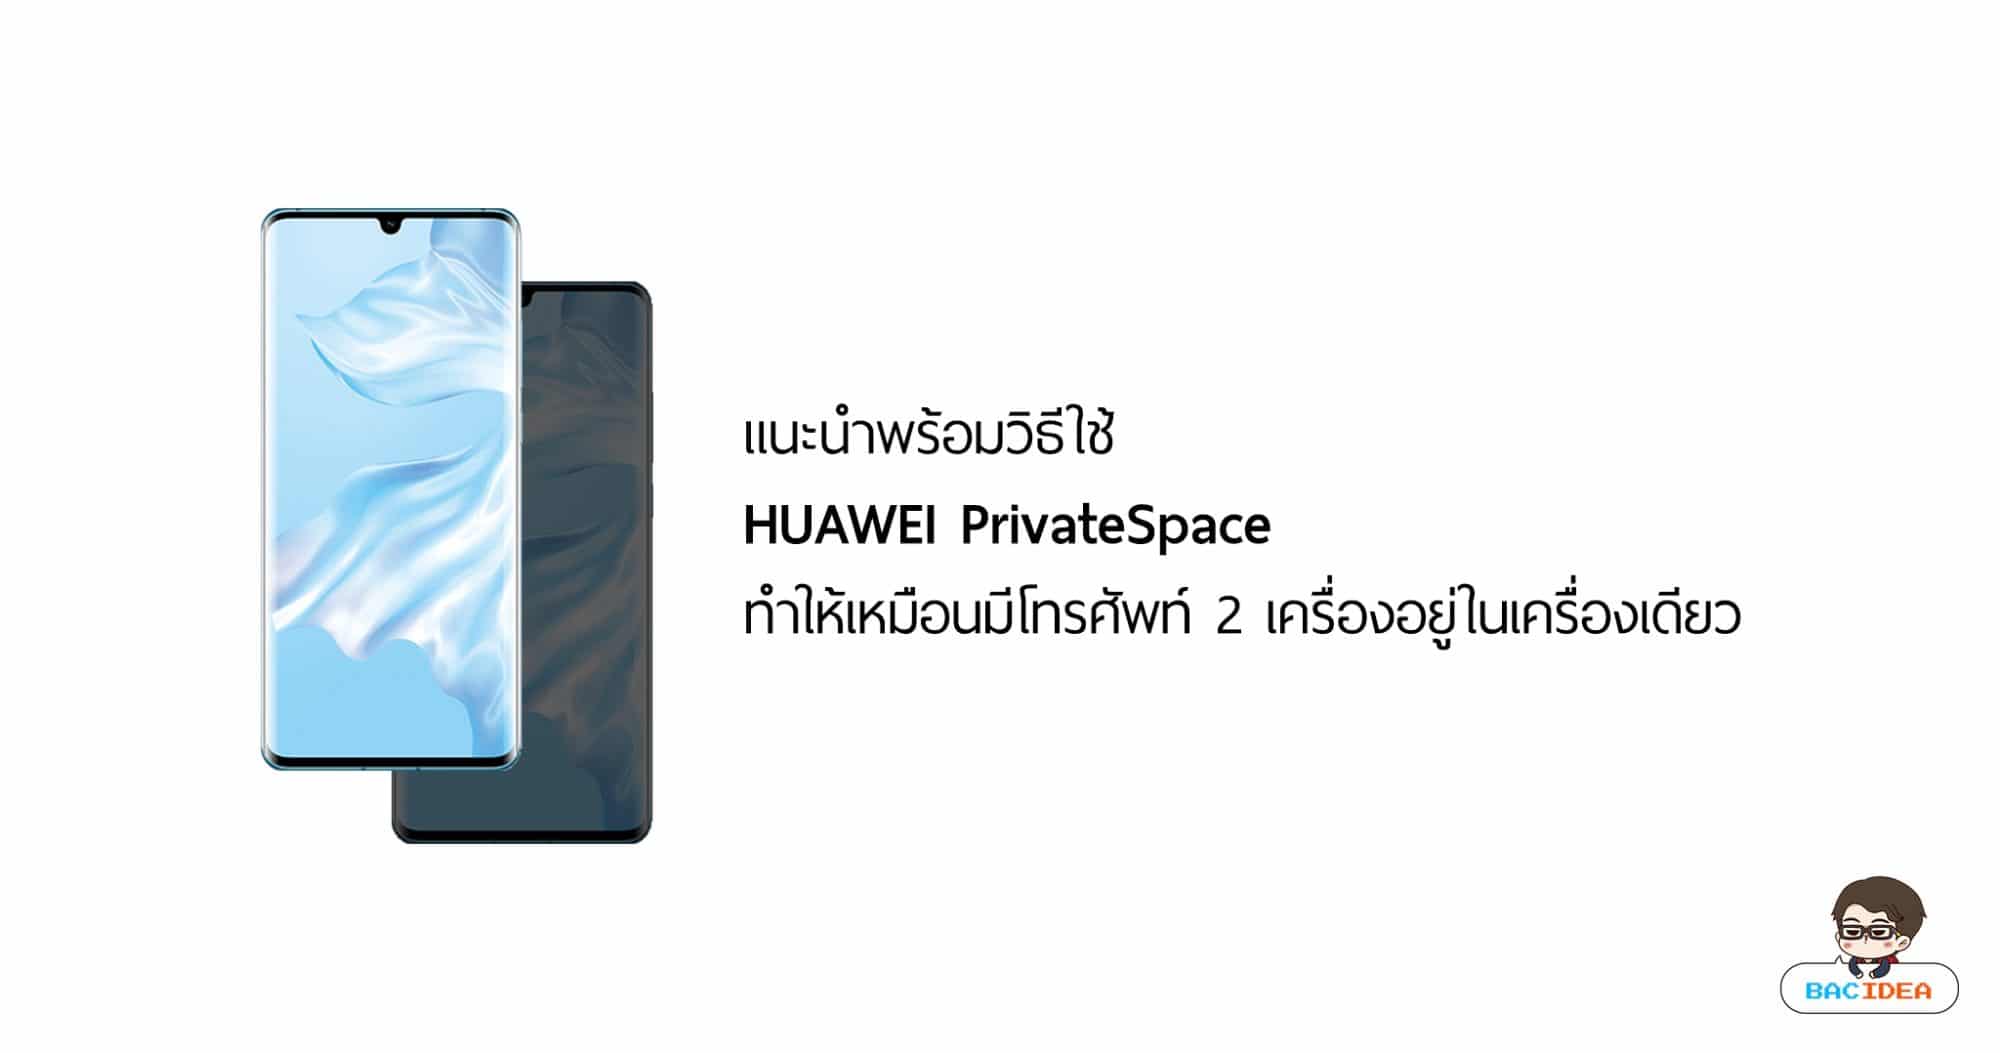 แนะนำพร้อมวิธีใช้ HUAWEI PrivateSpace ทำให้เหมือนมีโทรศัพท์ 2 เครื่องอยู่ในเครื่องเดียว 1